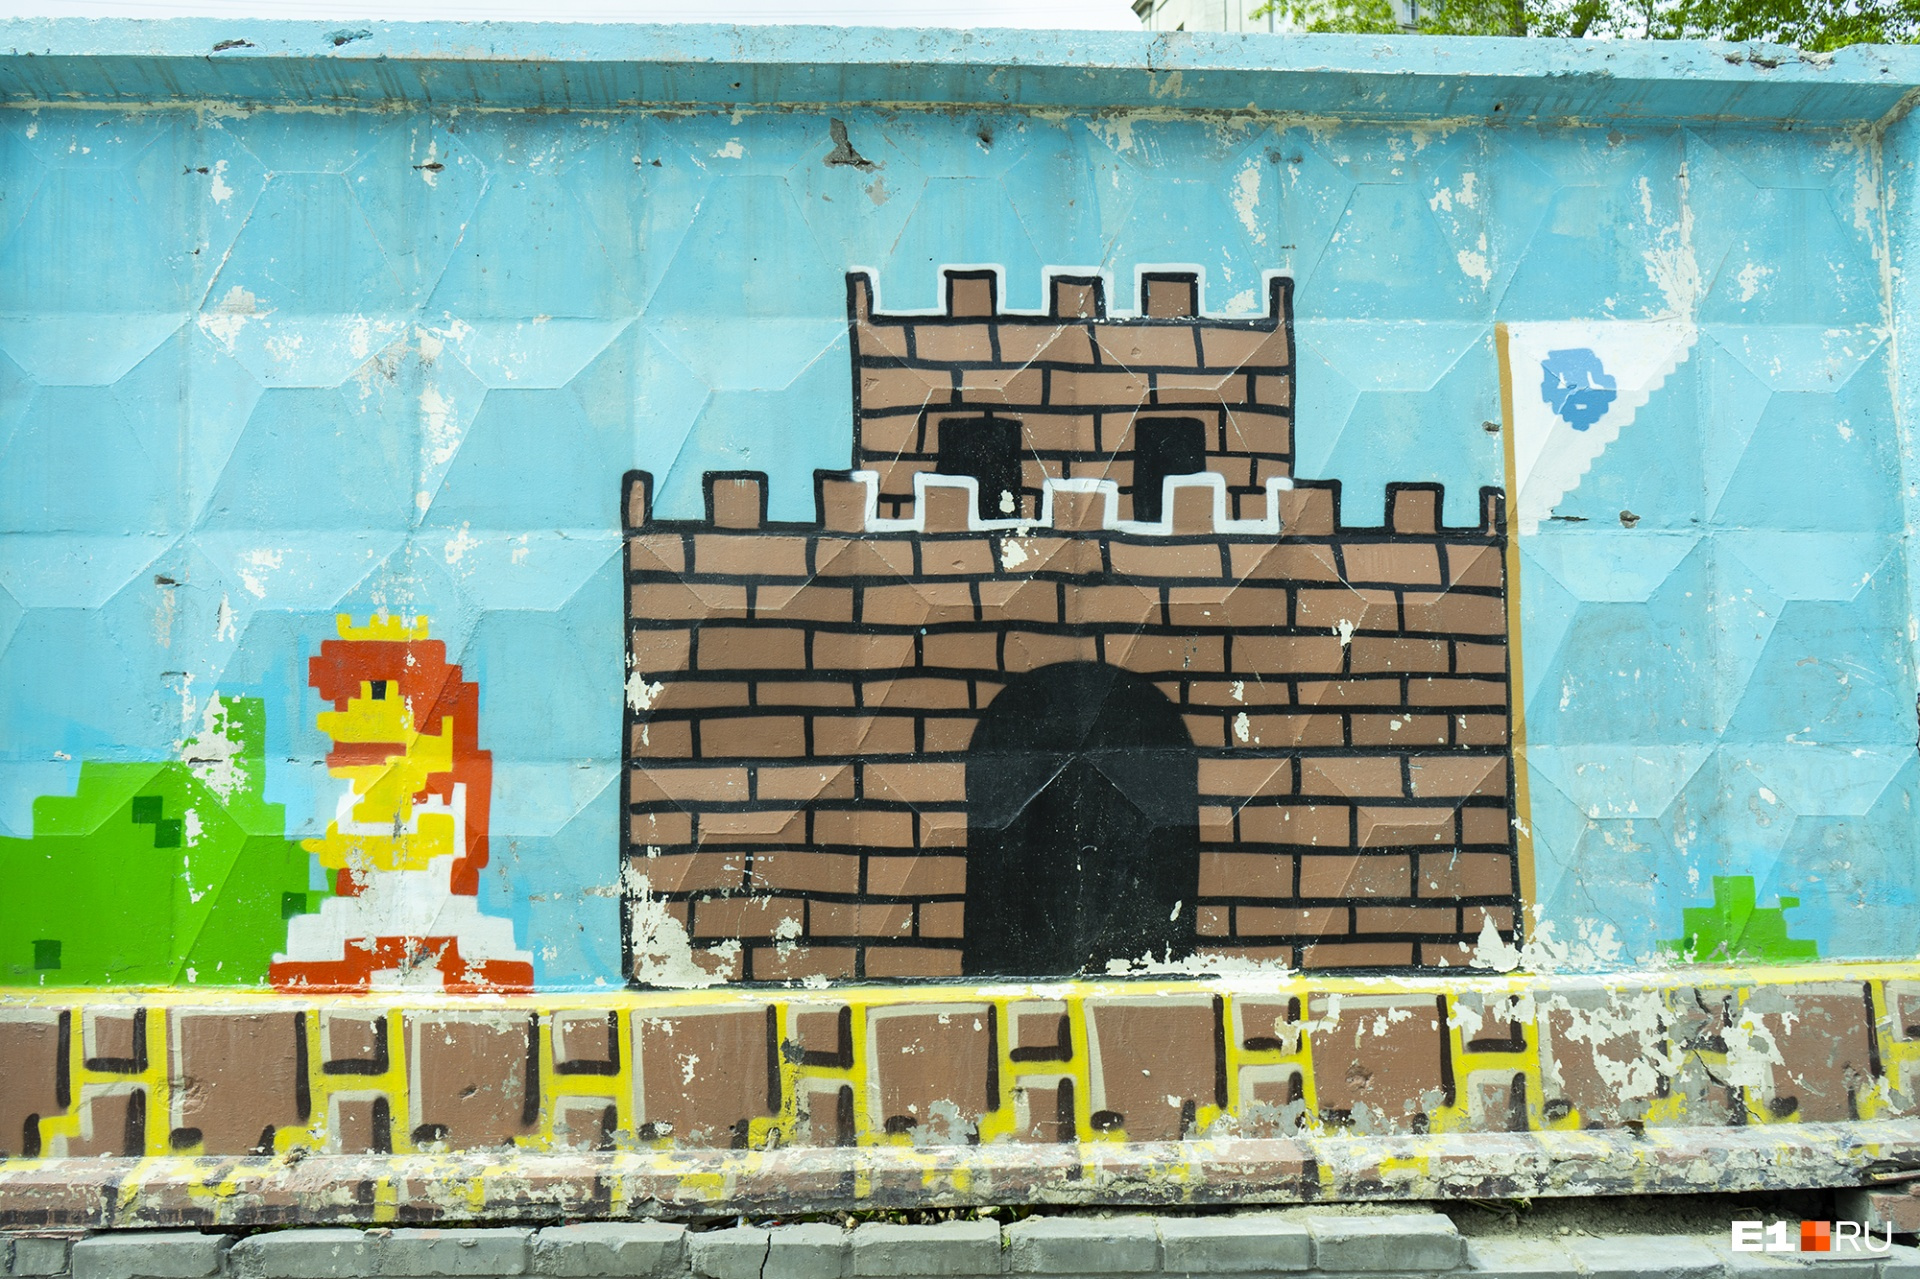 Скучную стенку разрисовывали всем городом: художникам помогали волонтеры и прохожие. По кирпичику, по пикселю Супер Марио появлялся на стене